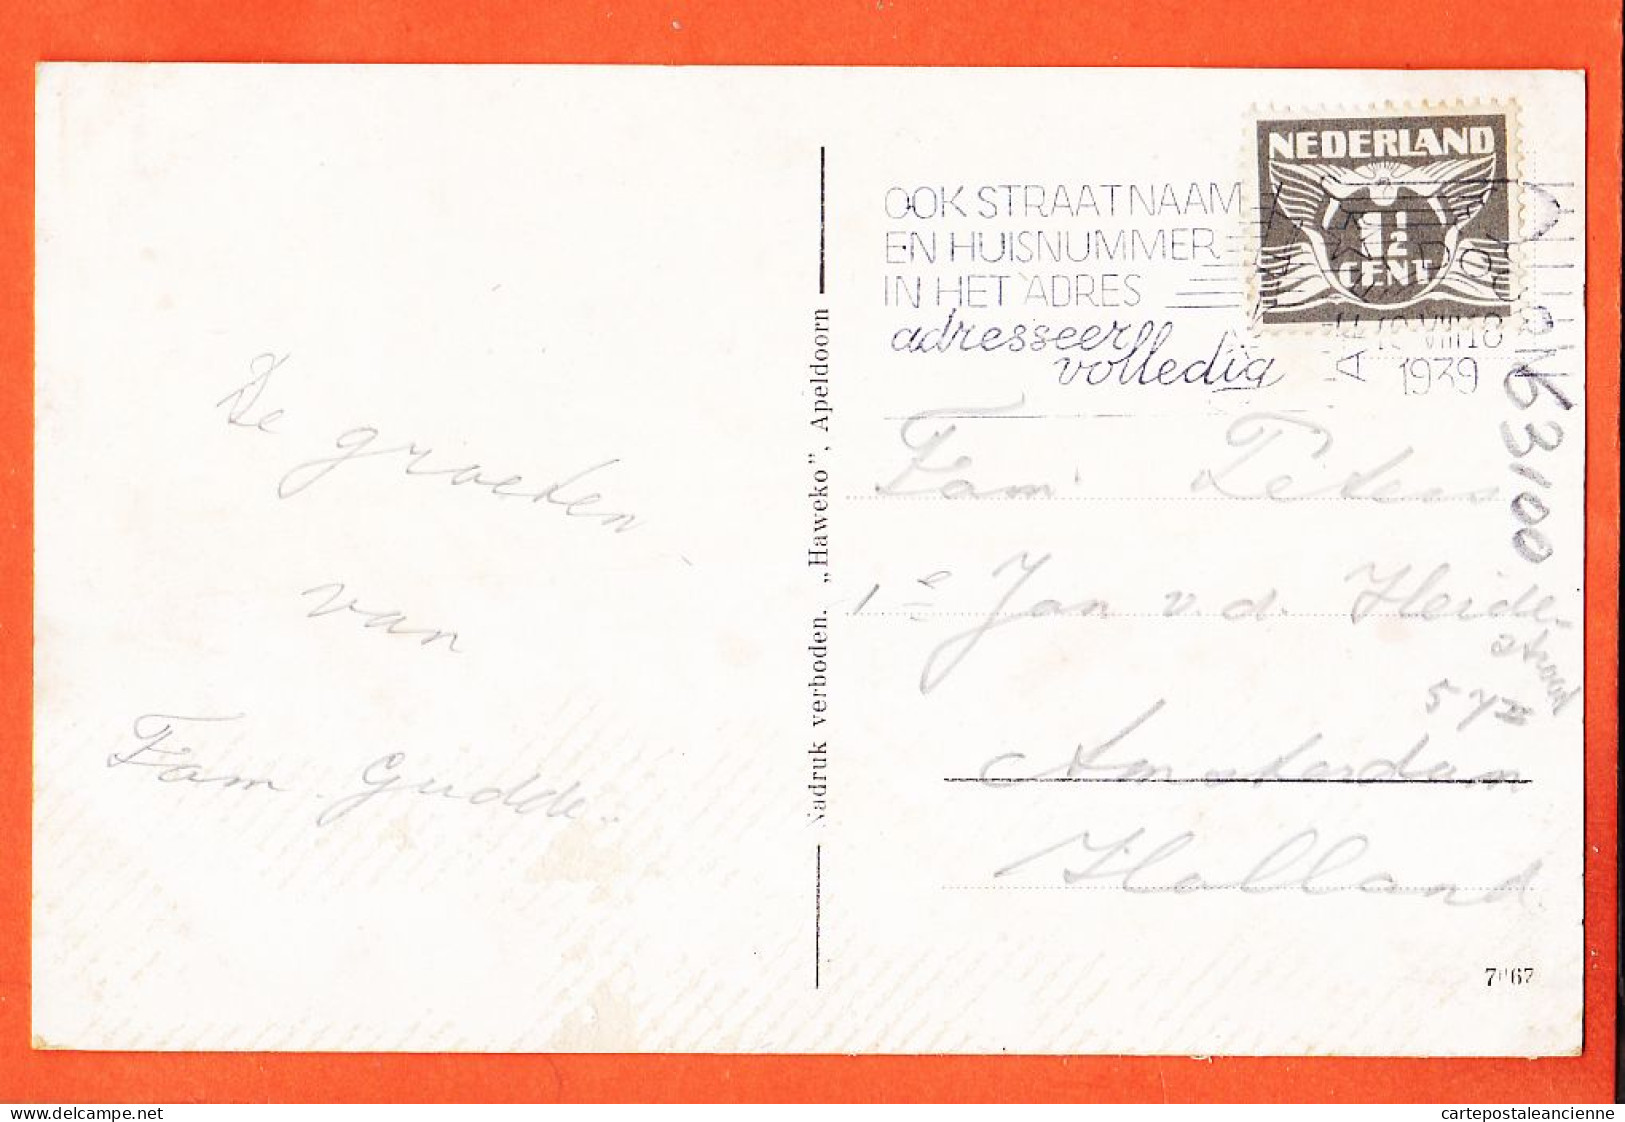 9294 / ⭐ APELDOORN Gelderland Waterval Bij LOENEN 1939  Uitgave HAWEKO Nederland Pays-Bas - Apeldoorn